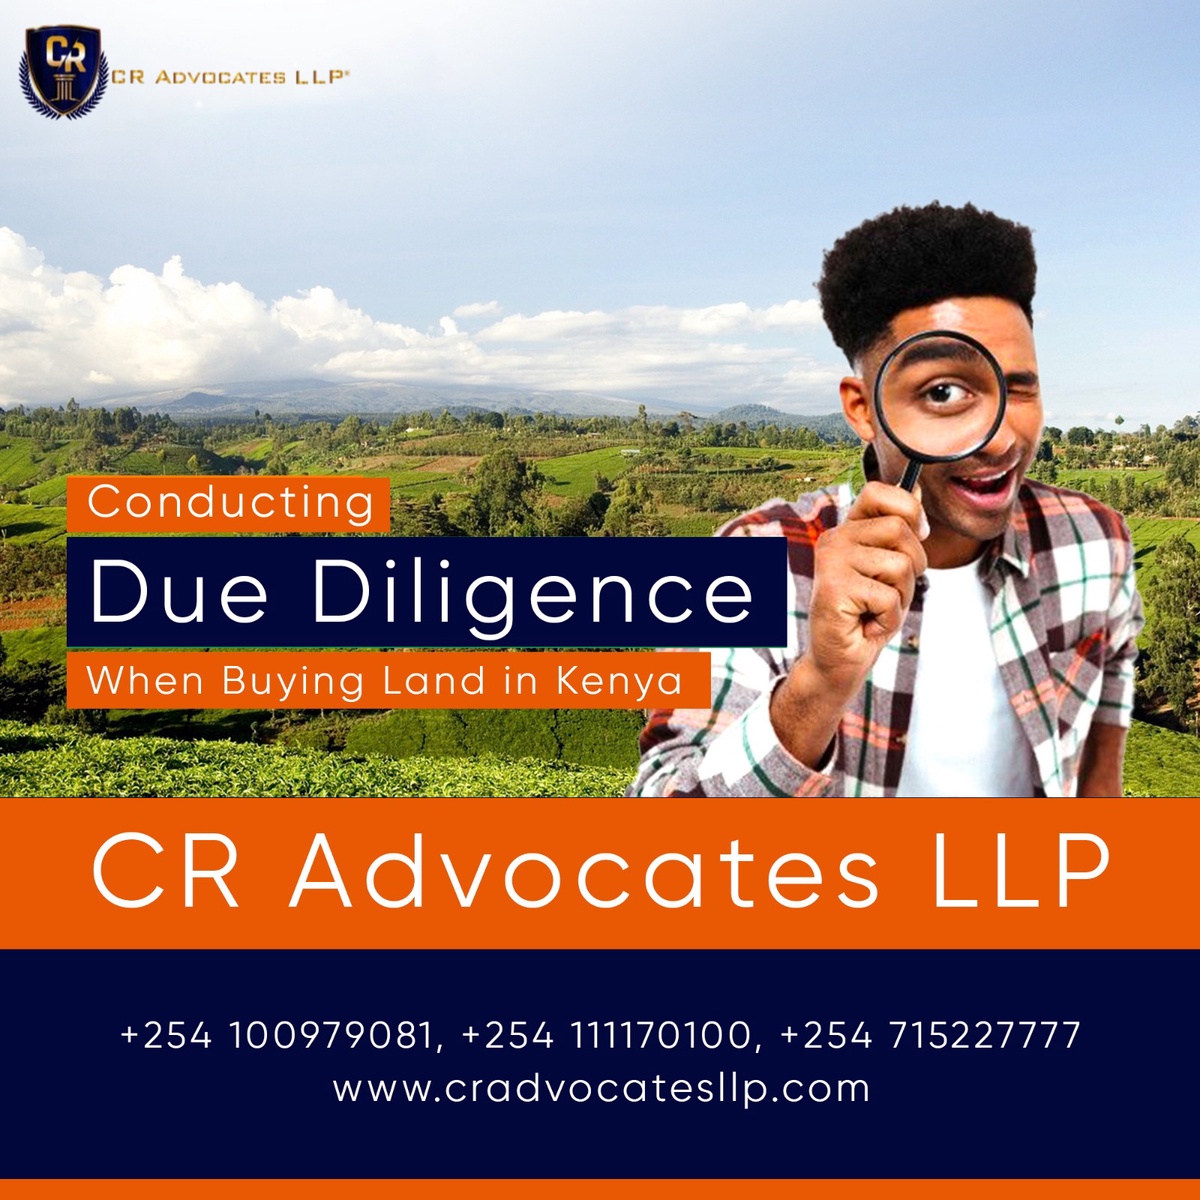 CR Advocates LLP: Your Premier Destination for Expert Due Diligence Services